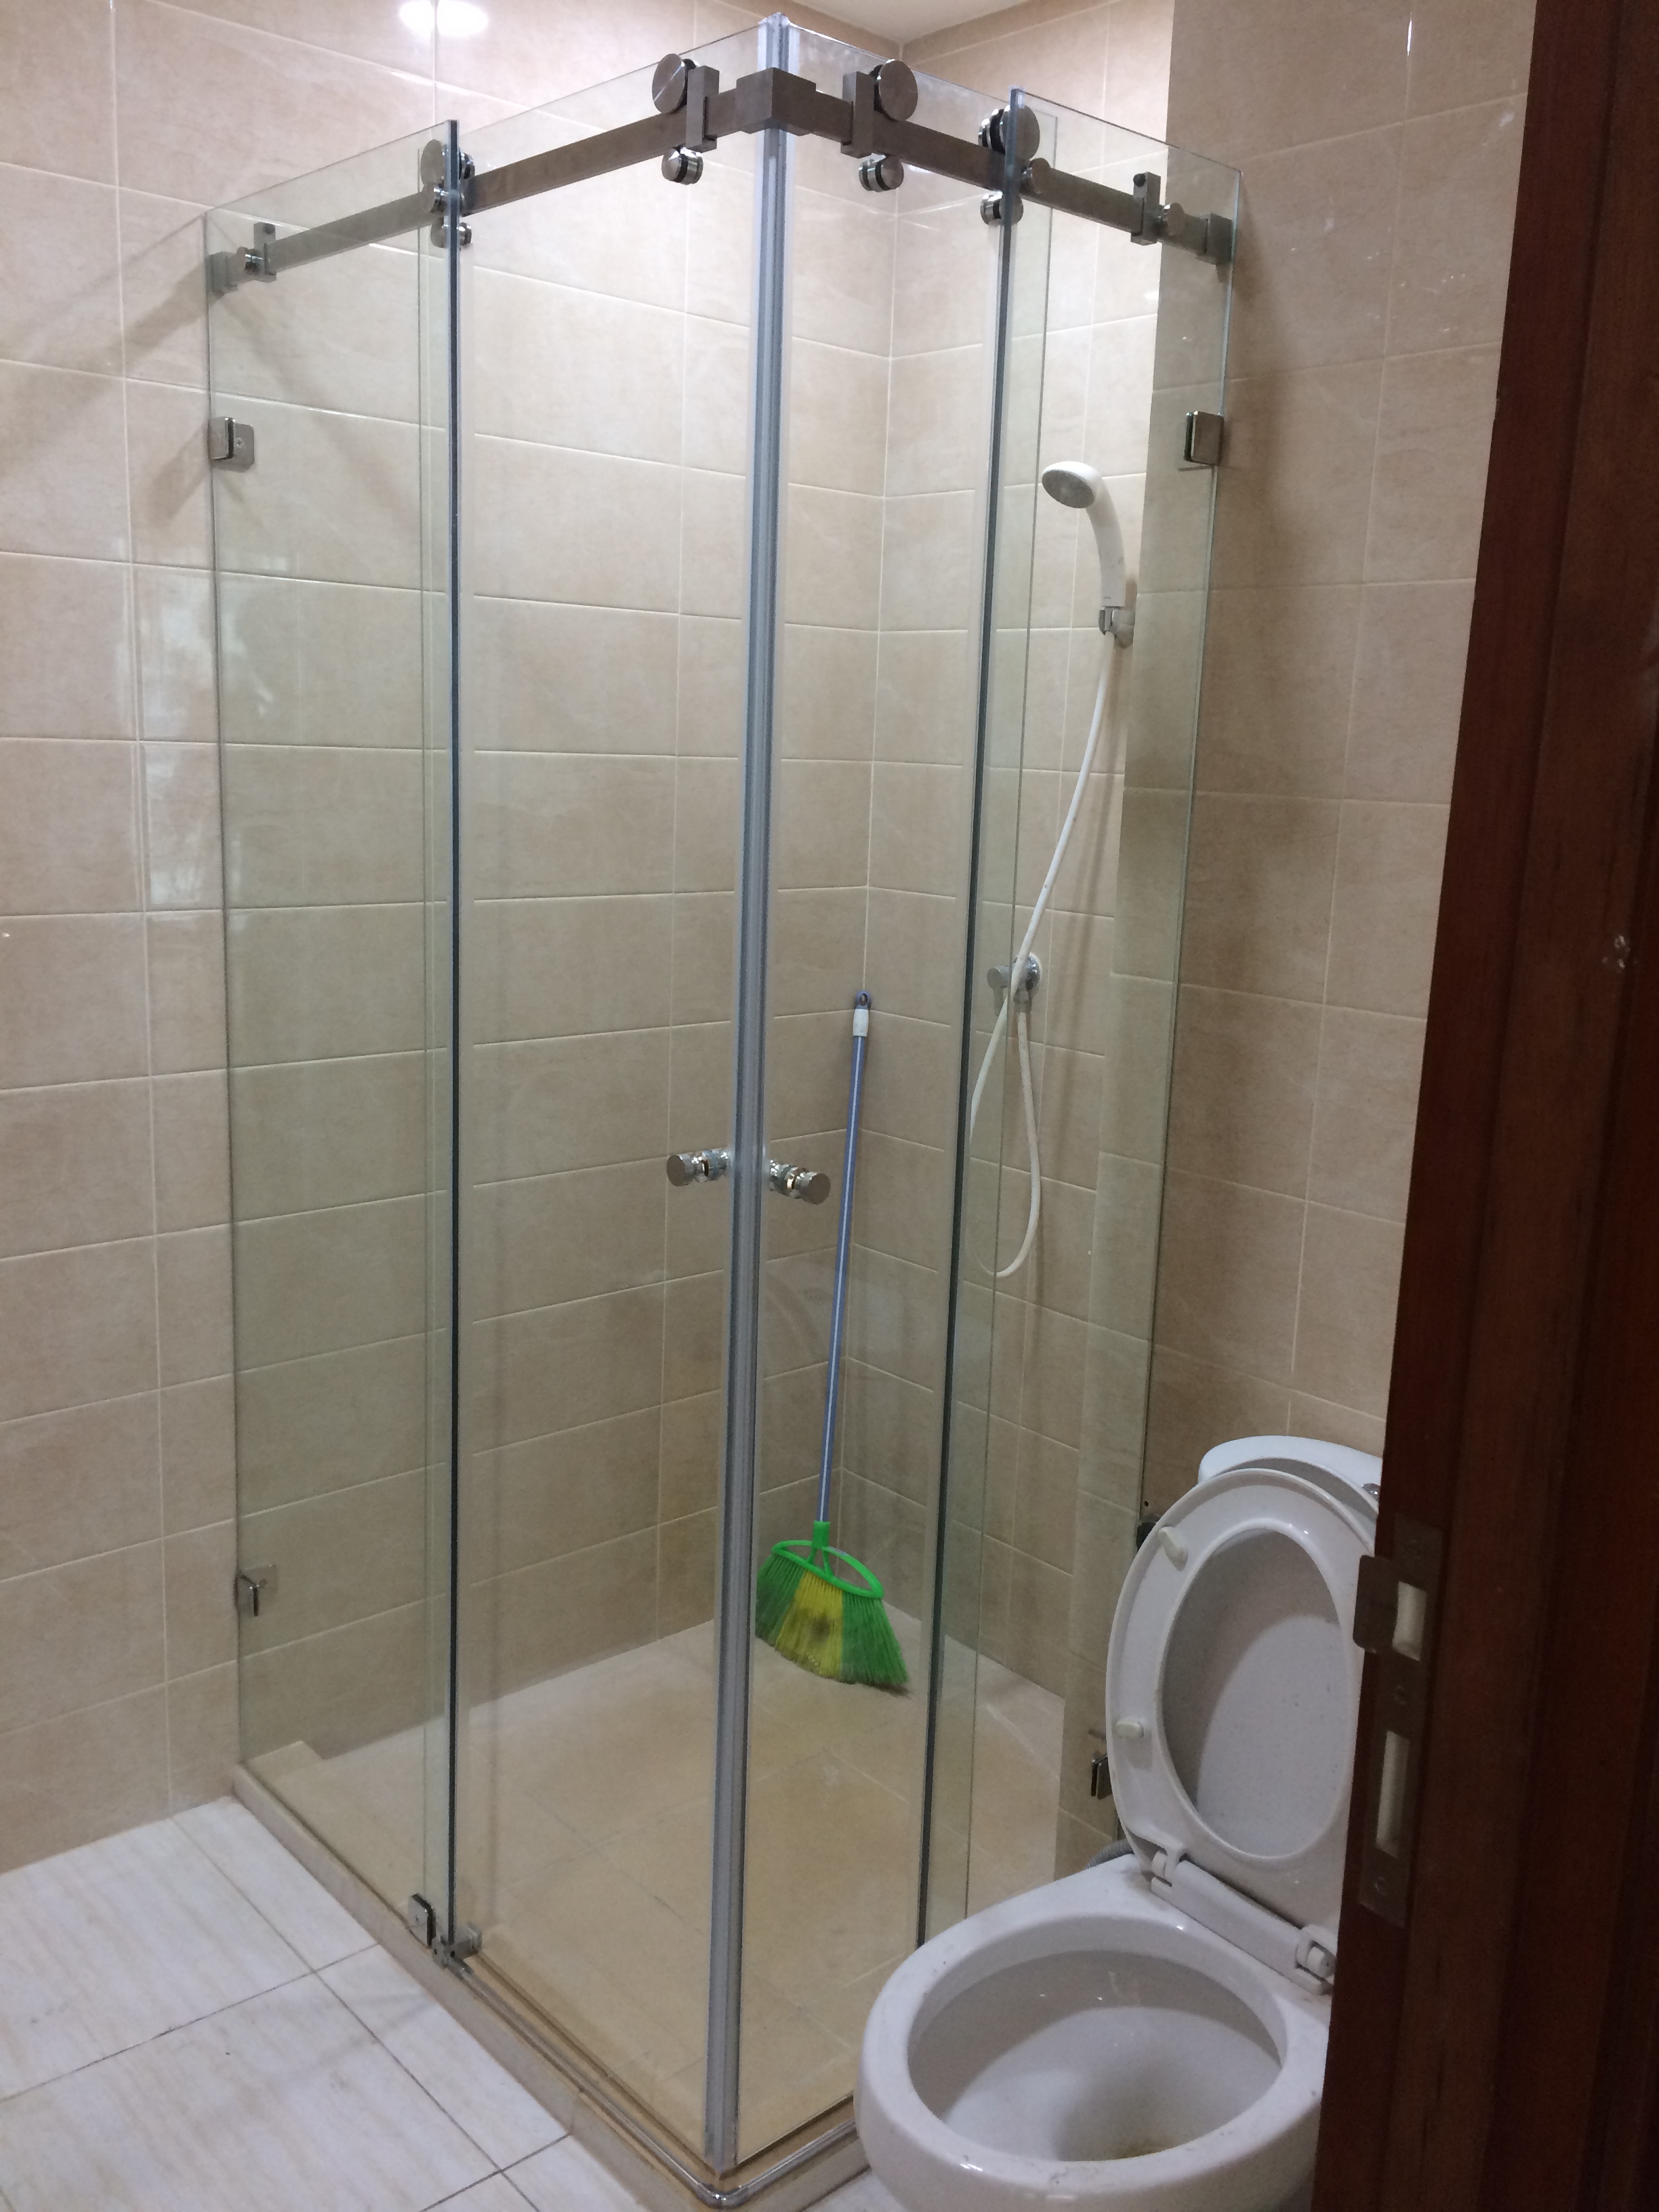 Harga Pintu Kaca Shower, Pintu Kaca Frameless Kamar Mandi